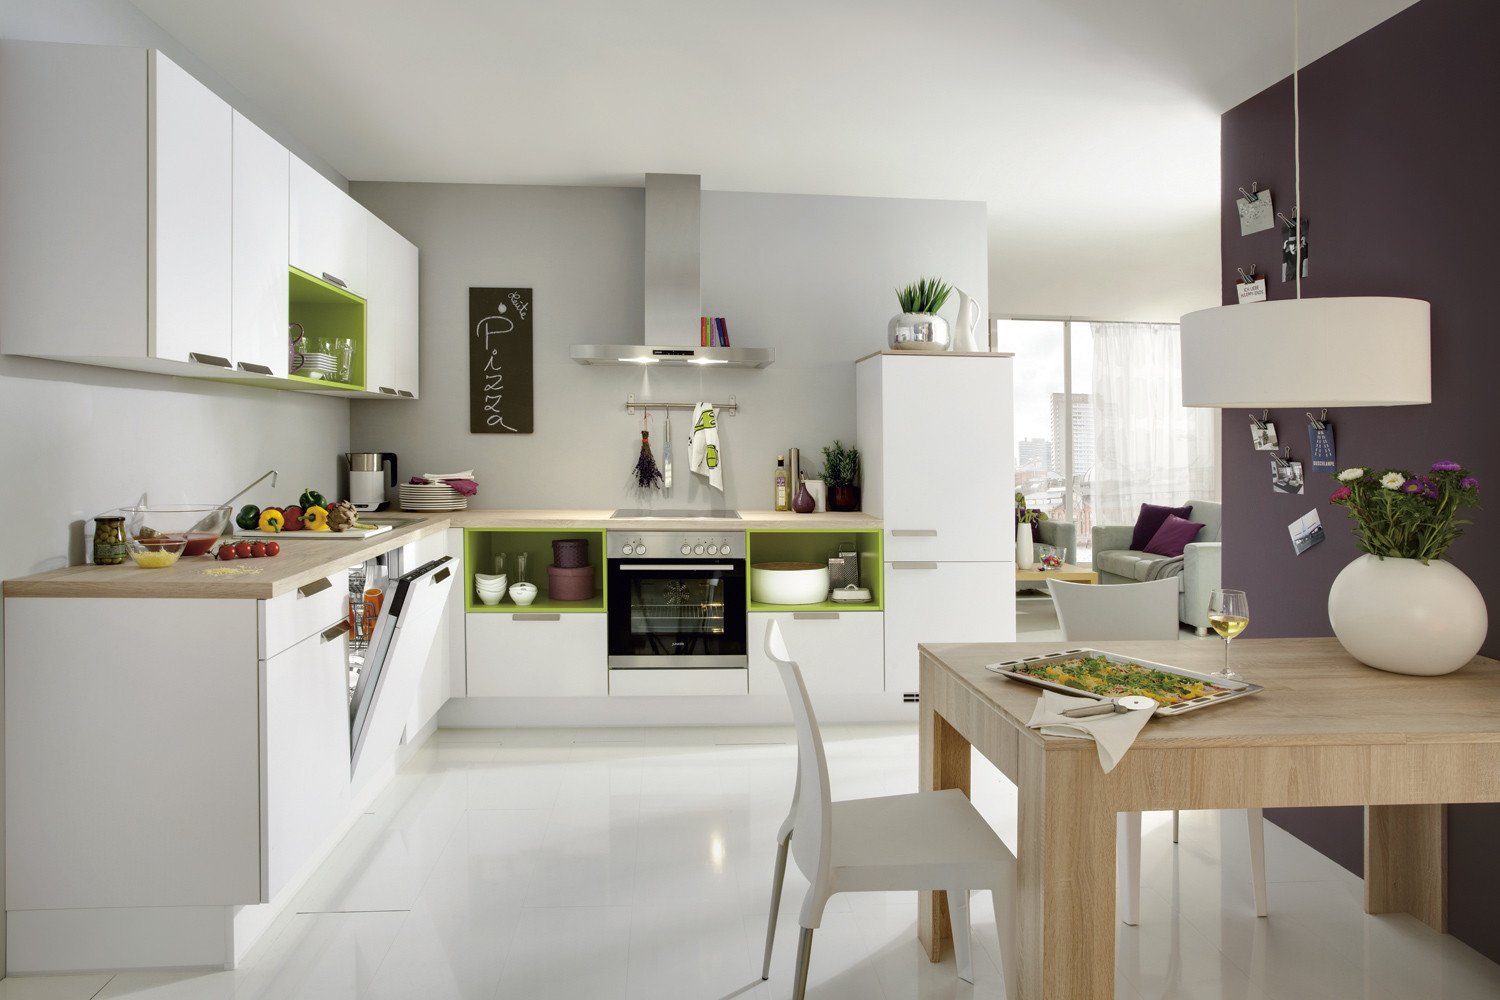 Кухня в стиле модерн (80 фото) - дизайн, красивые идеи интерьеров, ремонт и отделка